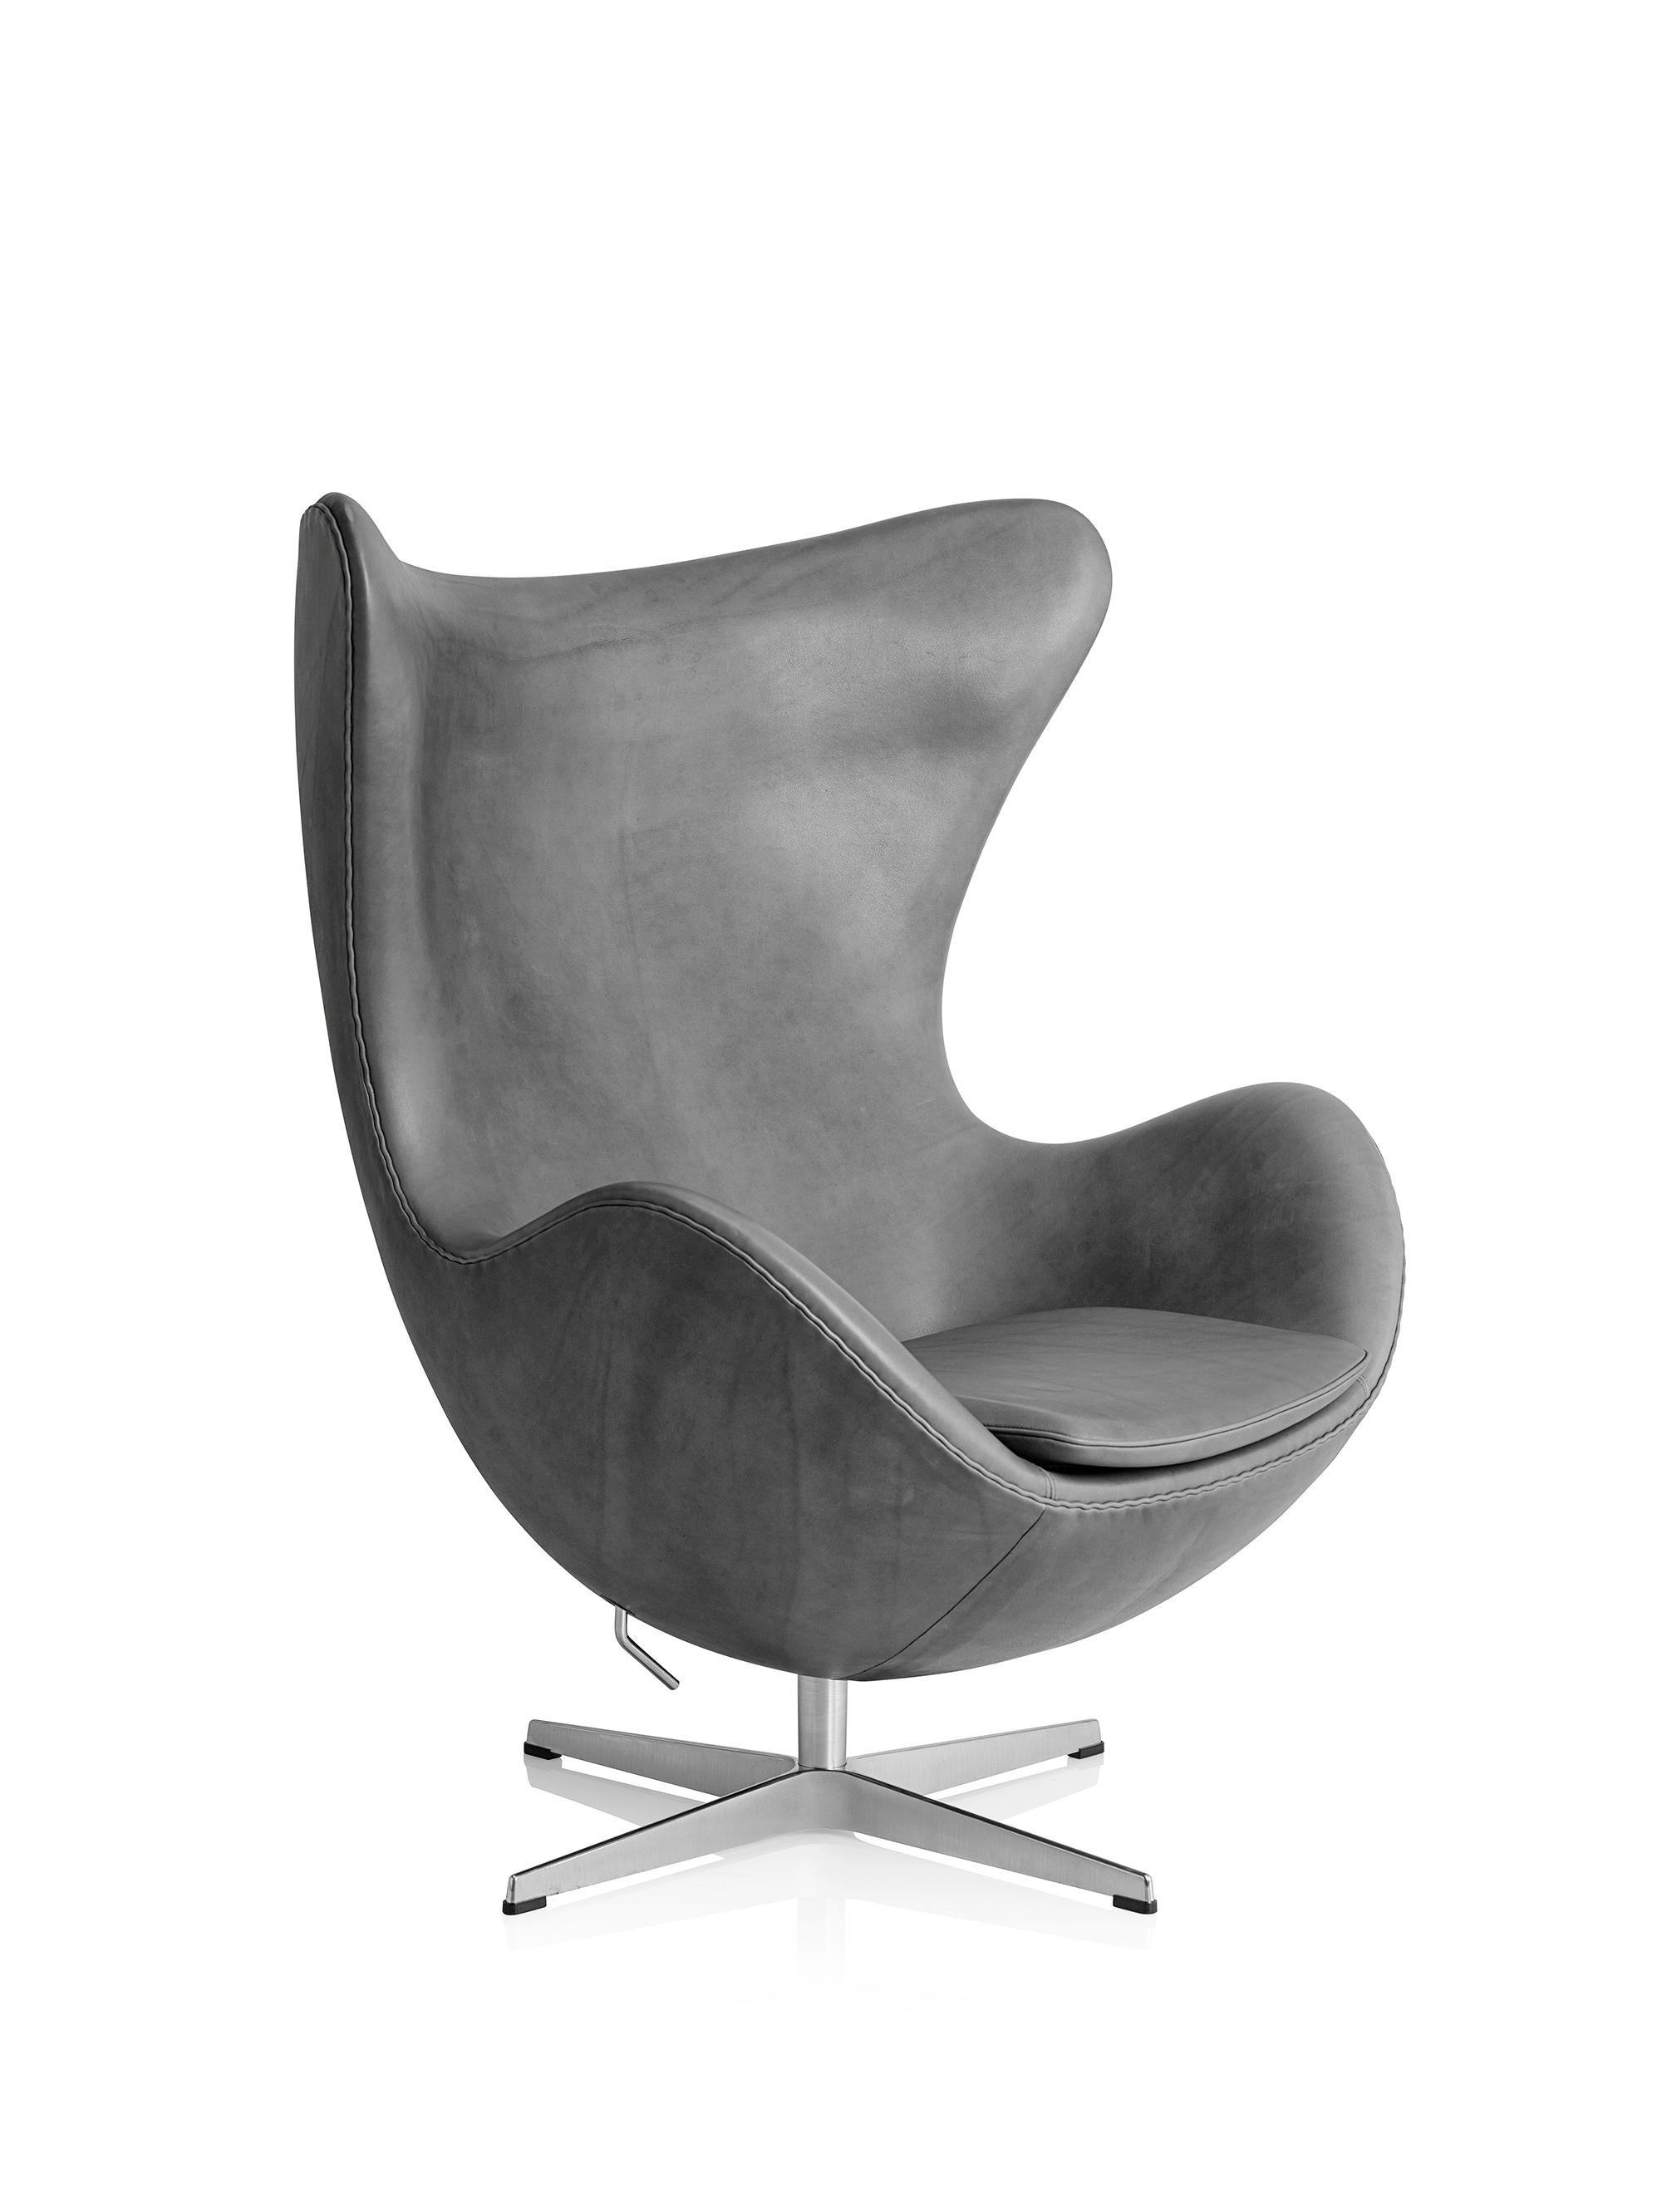 Arne Jacobsen 'Egg' Chair for Fritz Hansen in Leather Upholstery (Cat. 5) For Sale 3